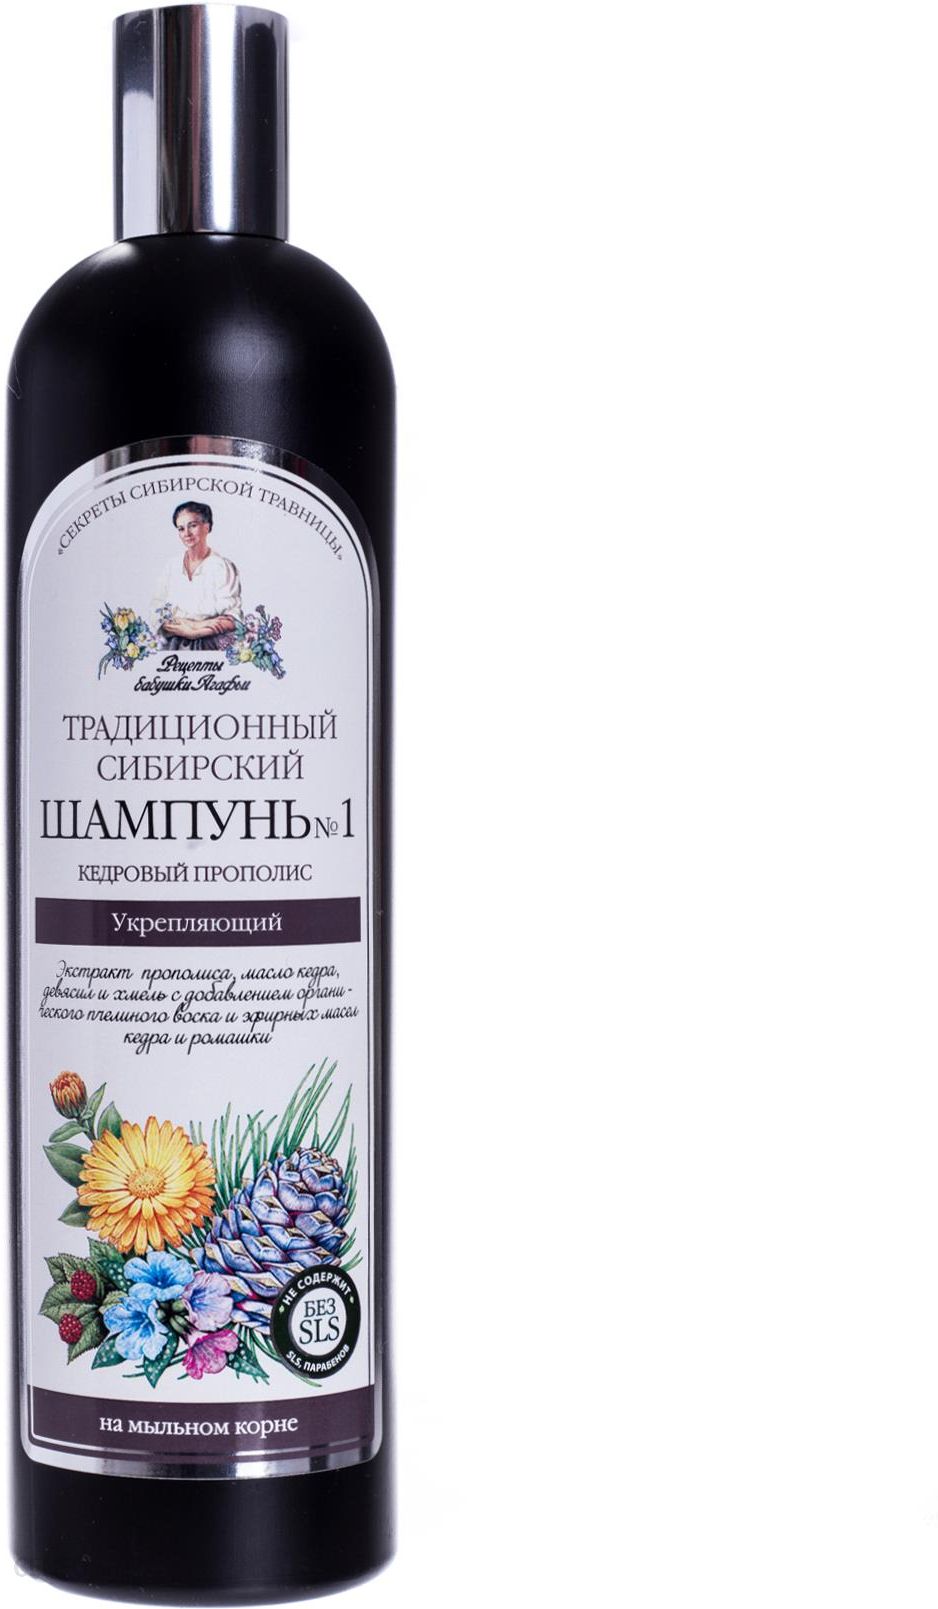 babuszka agafia szampon syberyjski tradycyjny nr1 wzmacniający